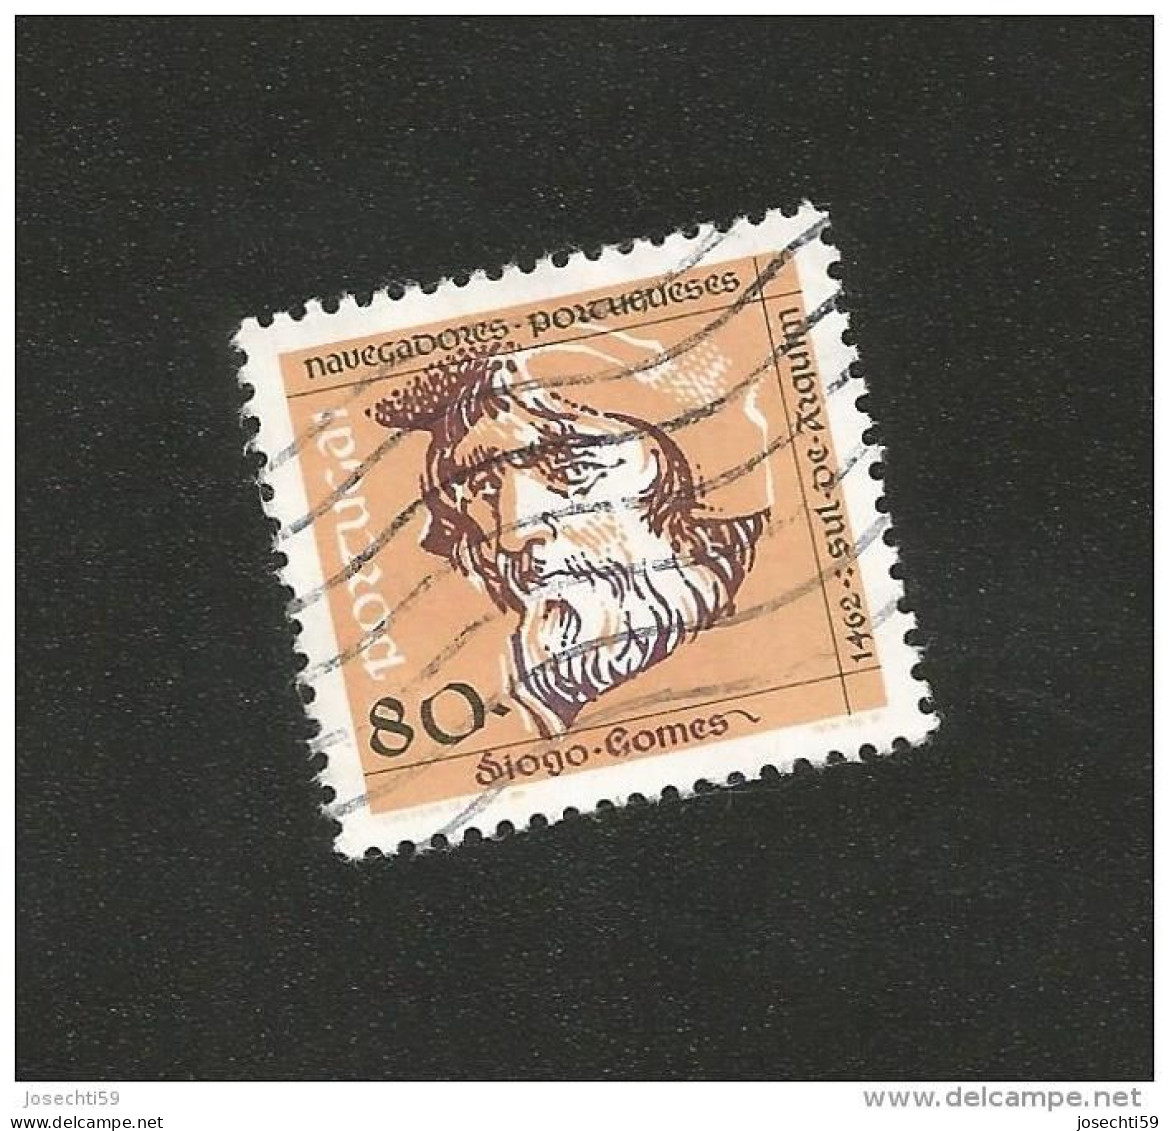 N° 1838 Navigateurs Portugais Diogo Gomes  (Sud D'Arquin) Timbre  Portugal Oblitéré 1991 - Used Stamps